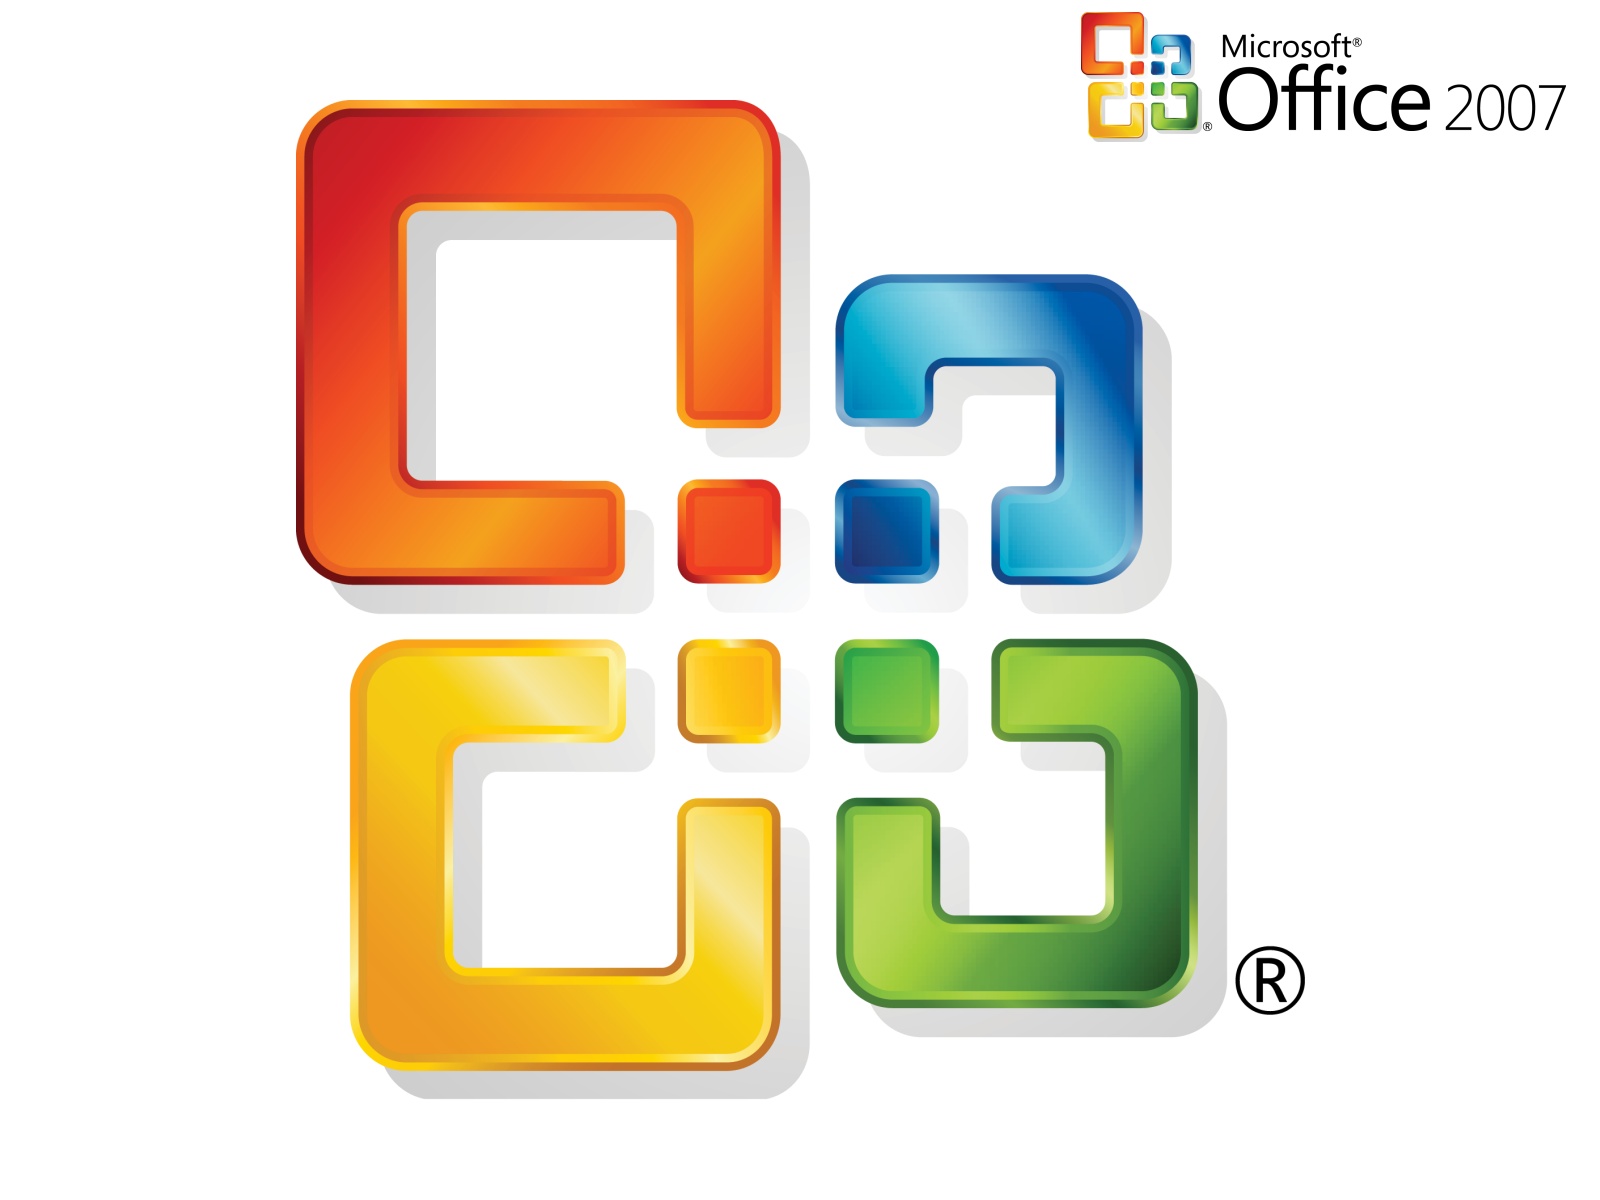  Windows - Microsoft Office 2007